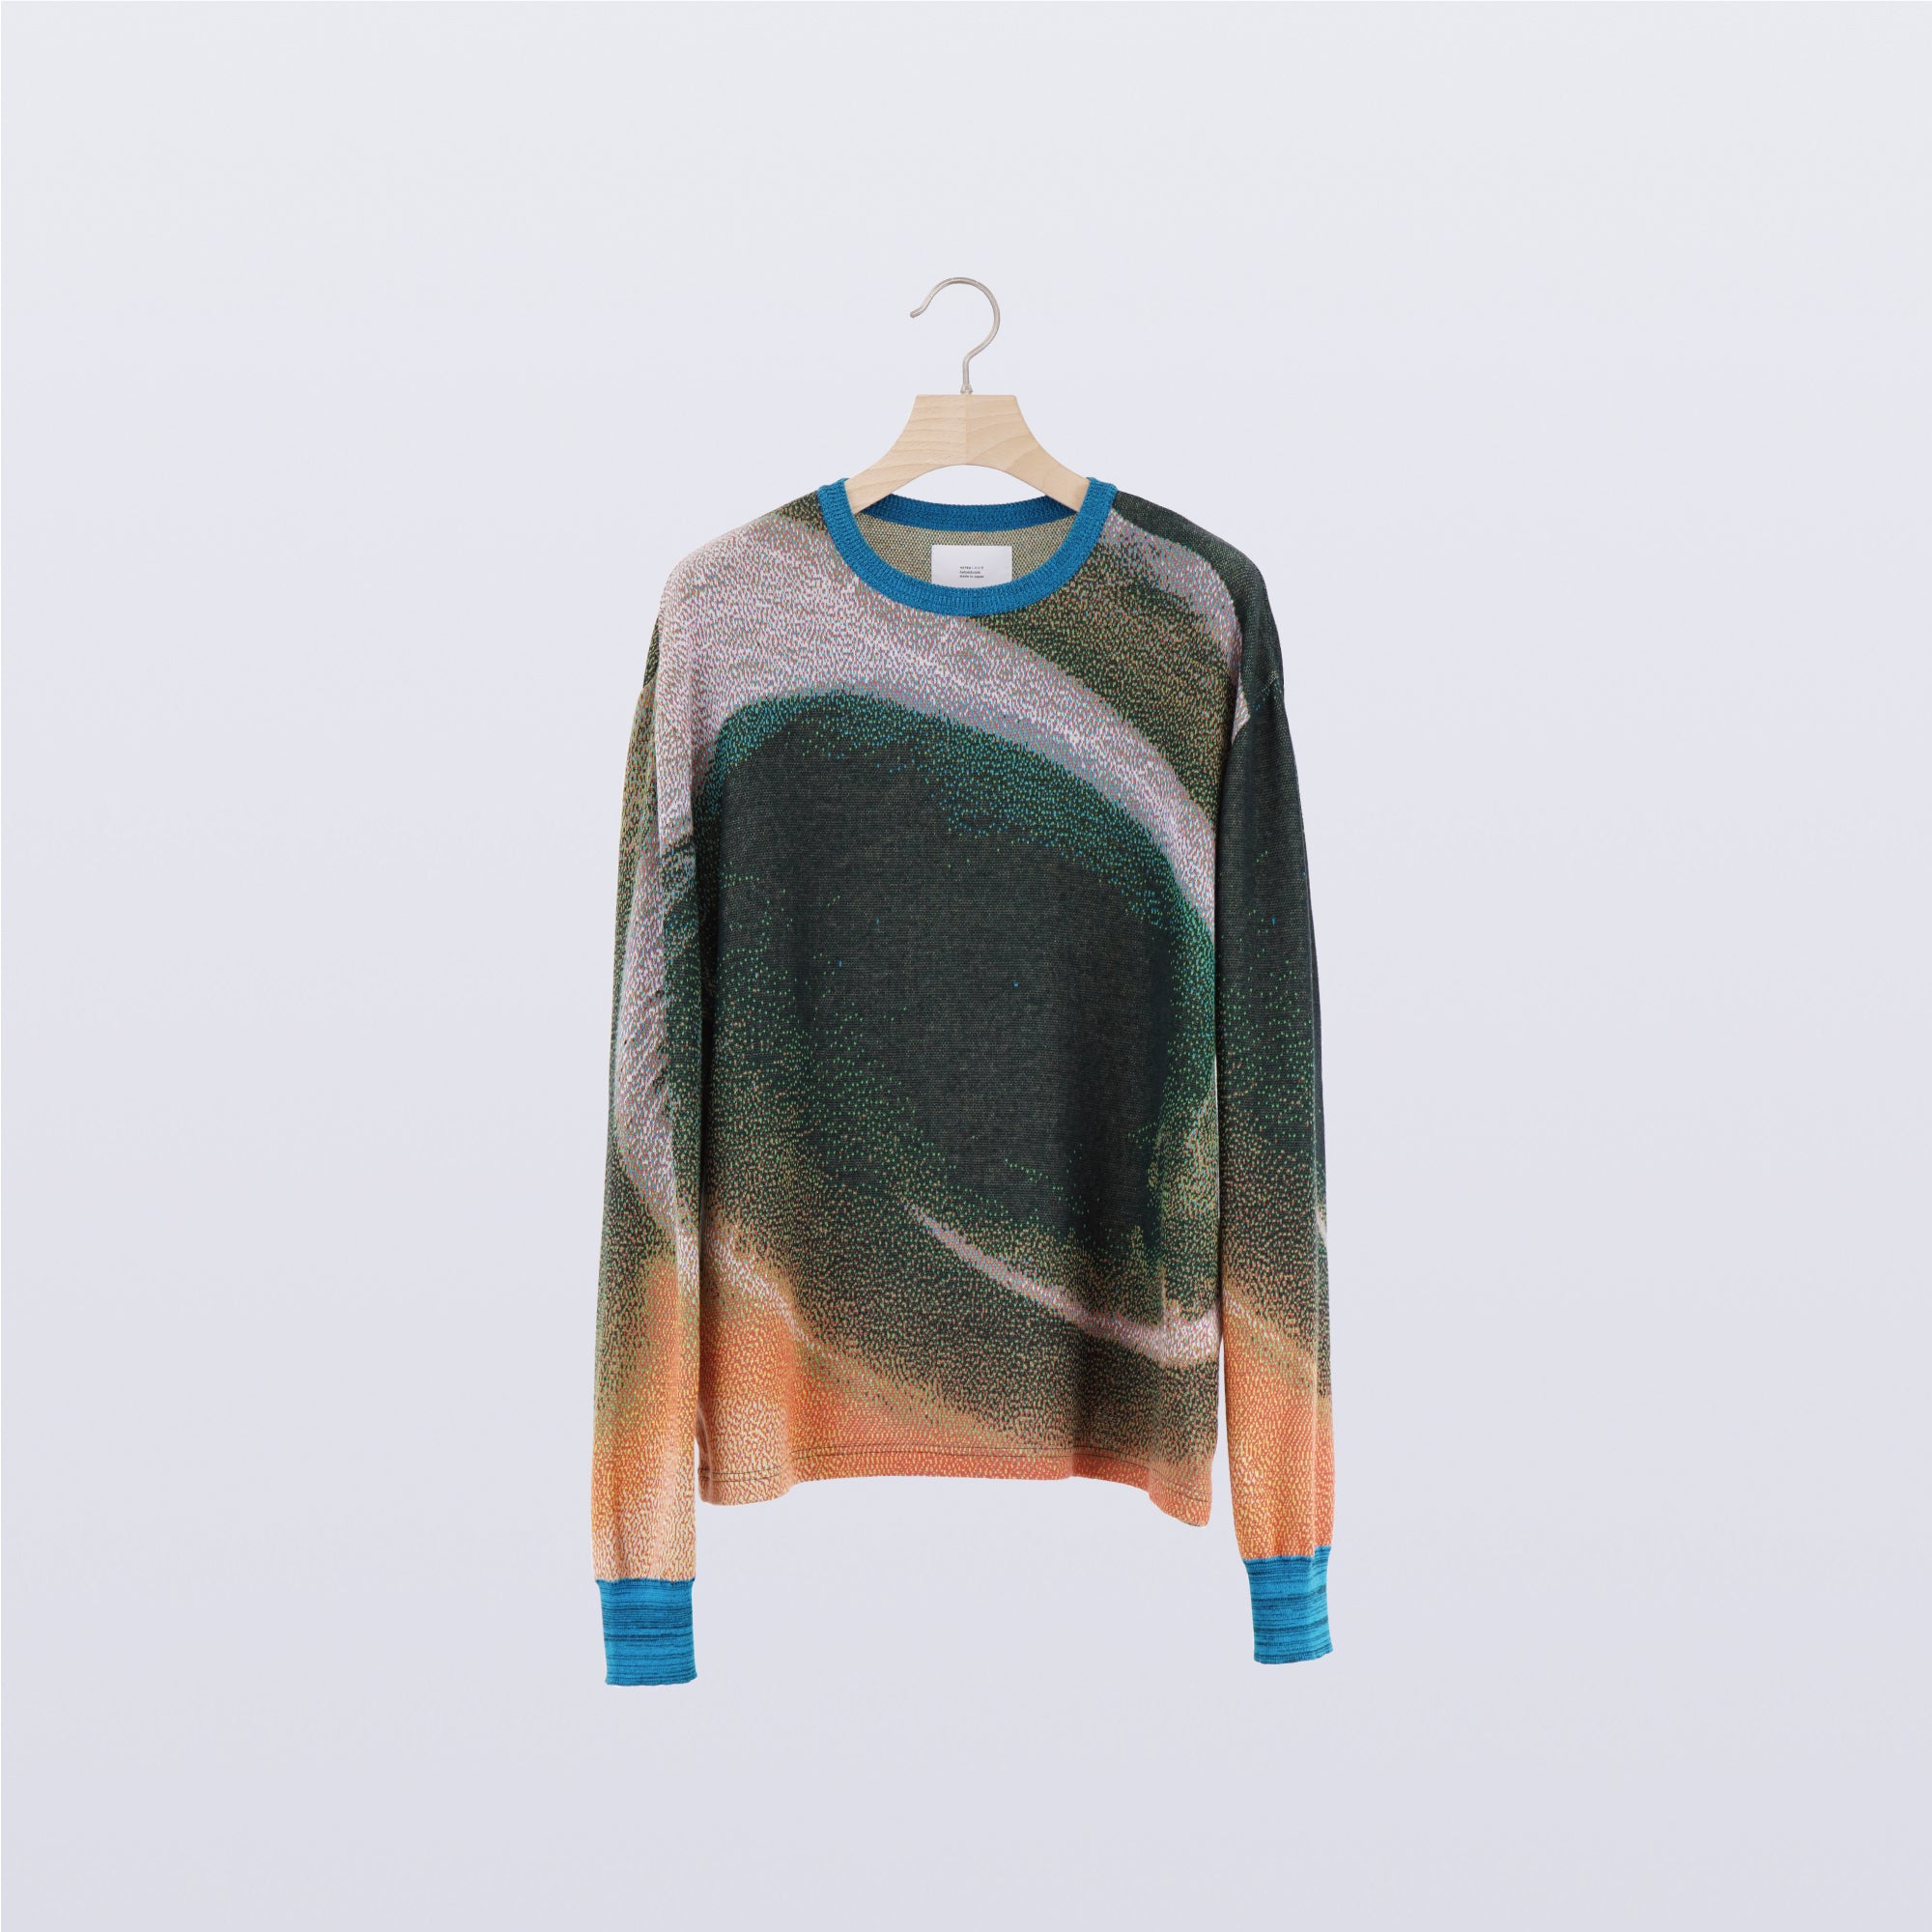 Ink Scape Sweater / caldera